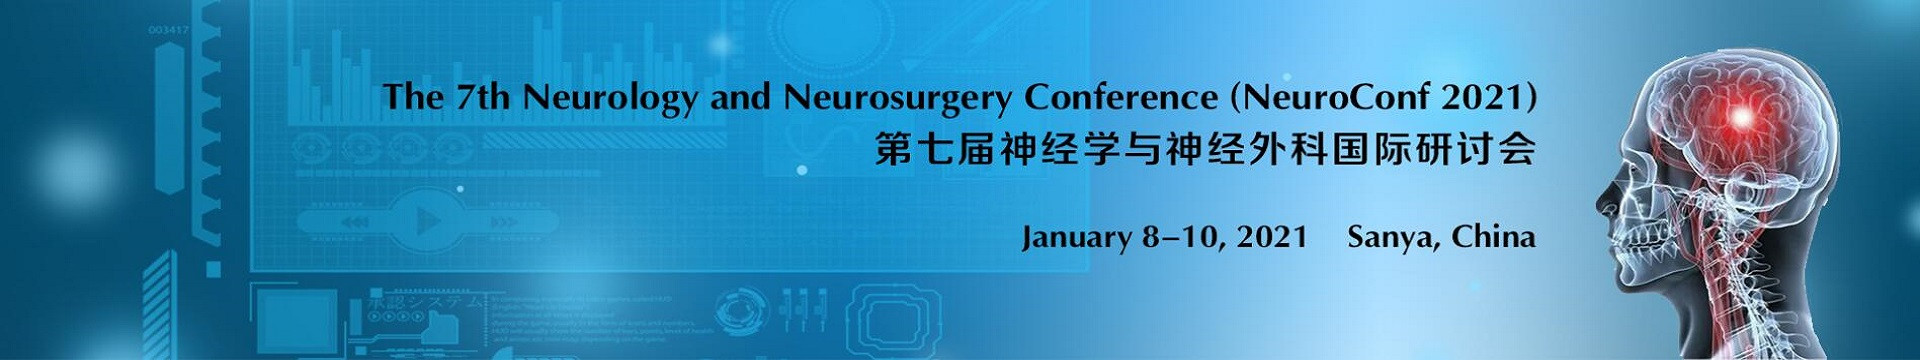 第七届神经学与神经外科国际研讨会(NeuroConf 2021)